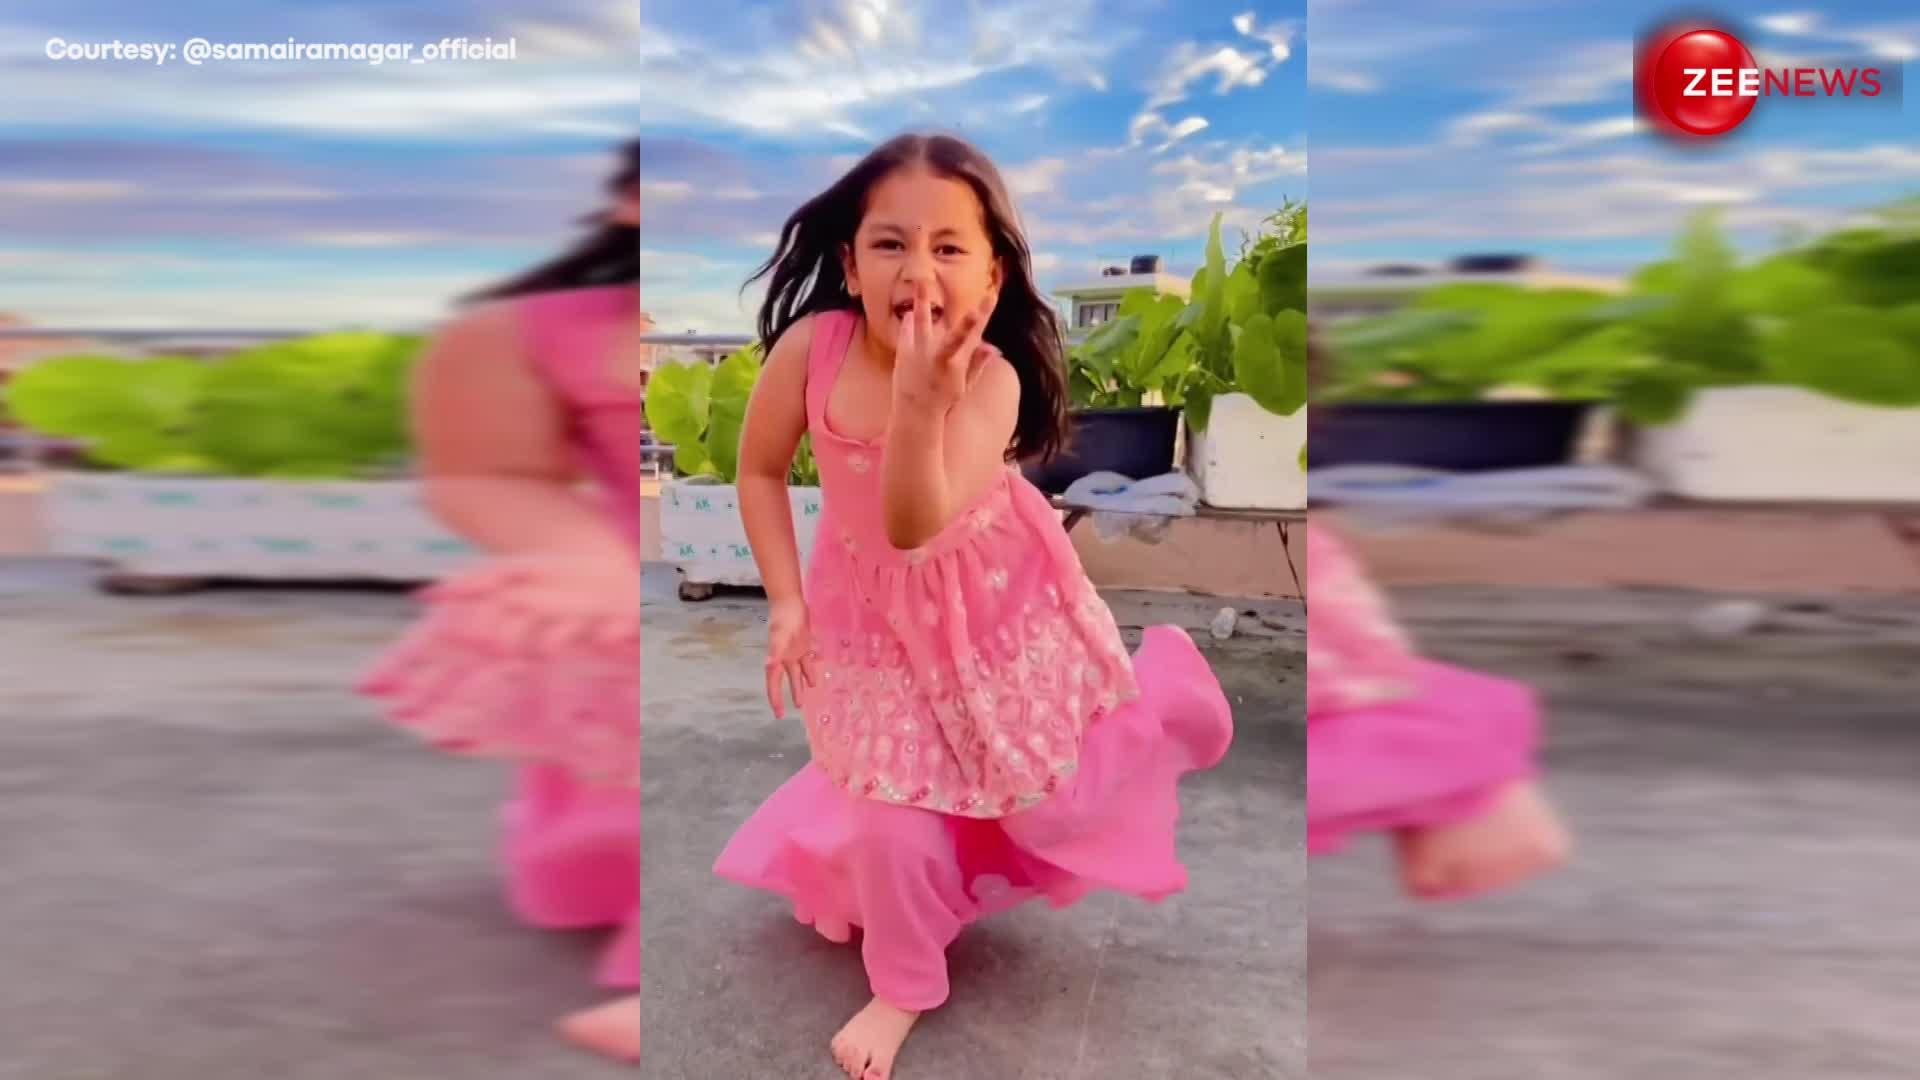 4 साल की छोटी बच्ची ने किया धांसू डांस, मूव्स और क्यूट एक्सप्रेशन पर फिदा हुए लोग, देखें वायरल video